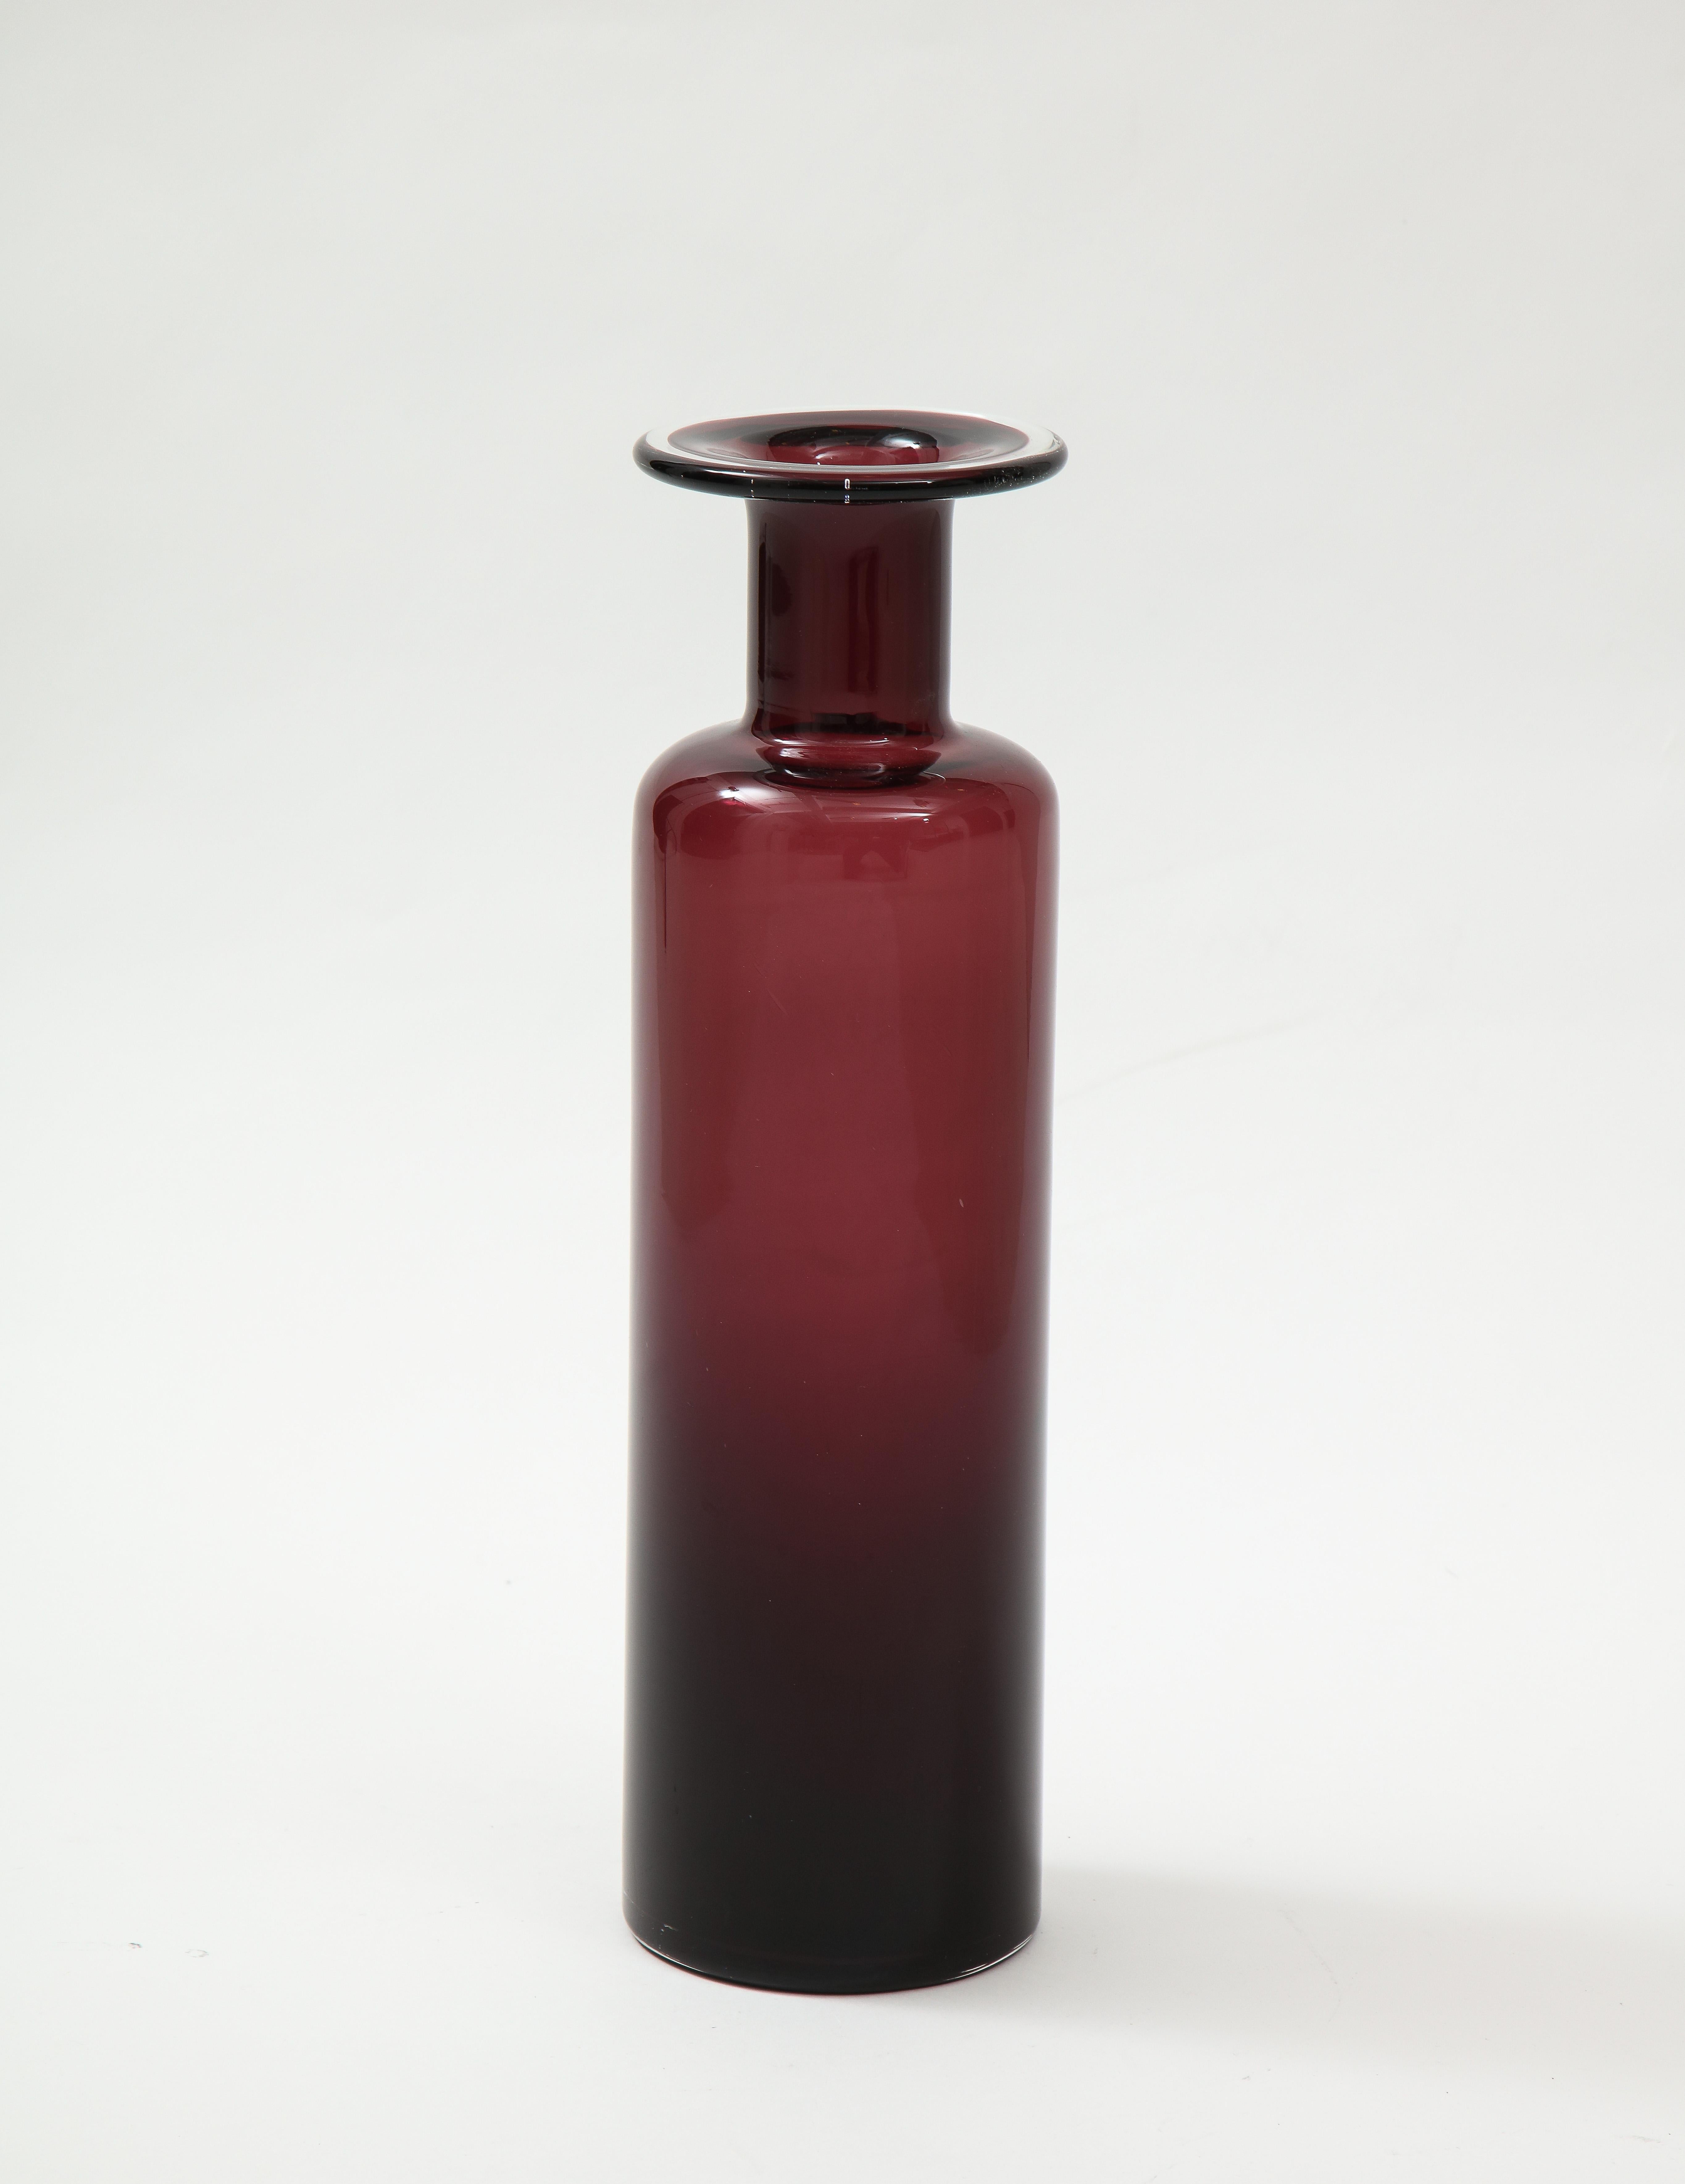 Murano style glass vase, purple, Bordeaux color.